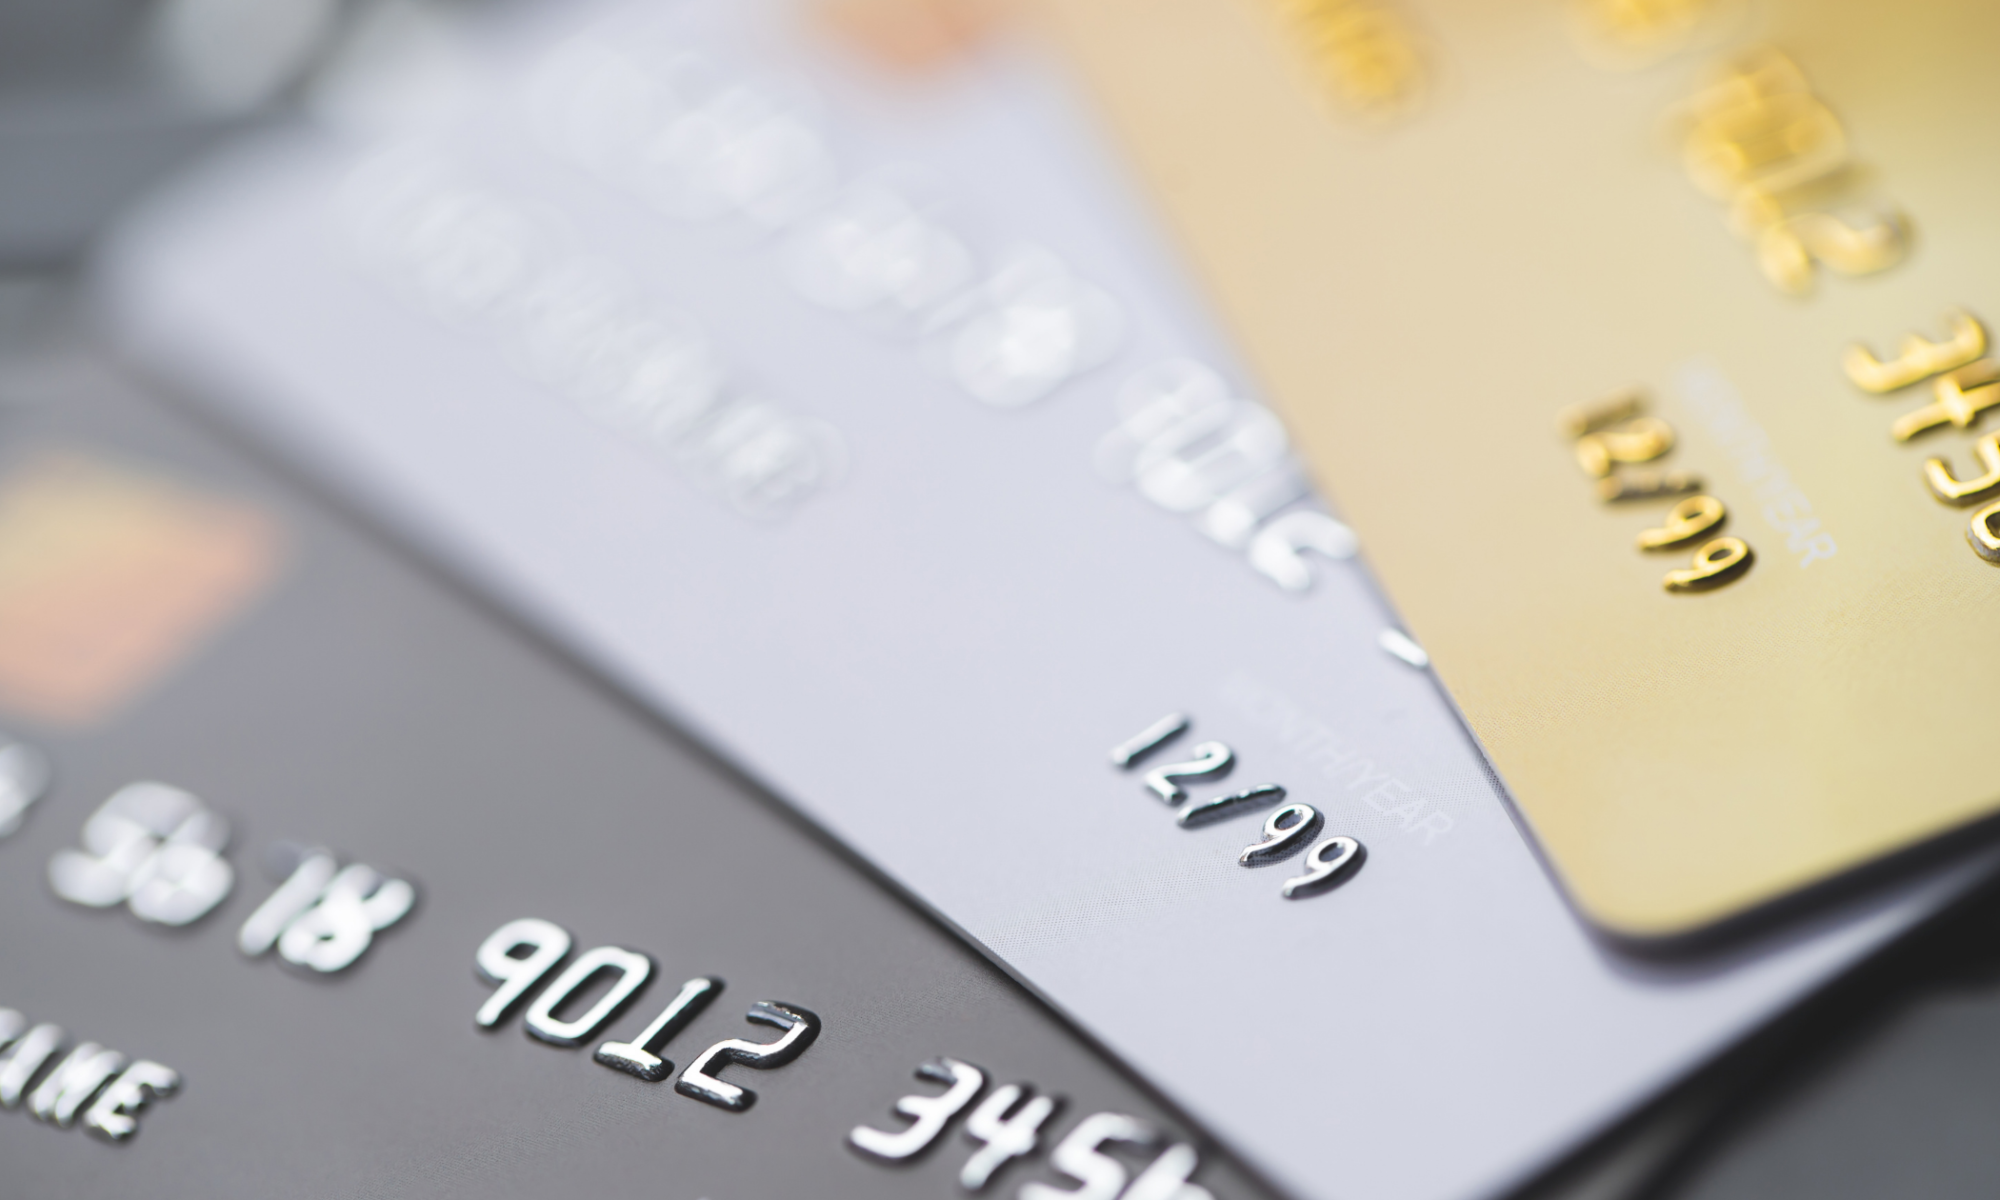 debit card safety